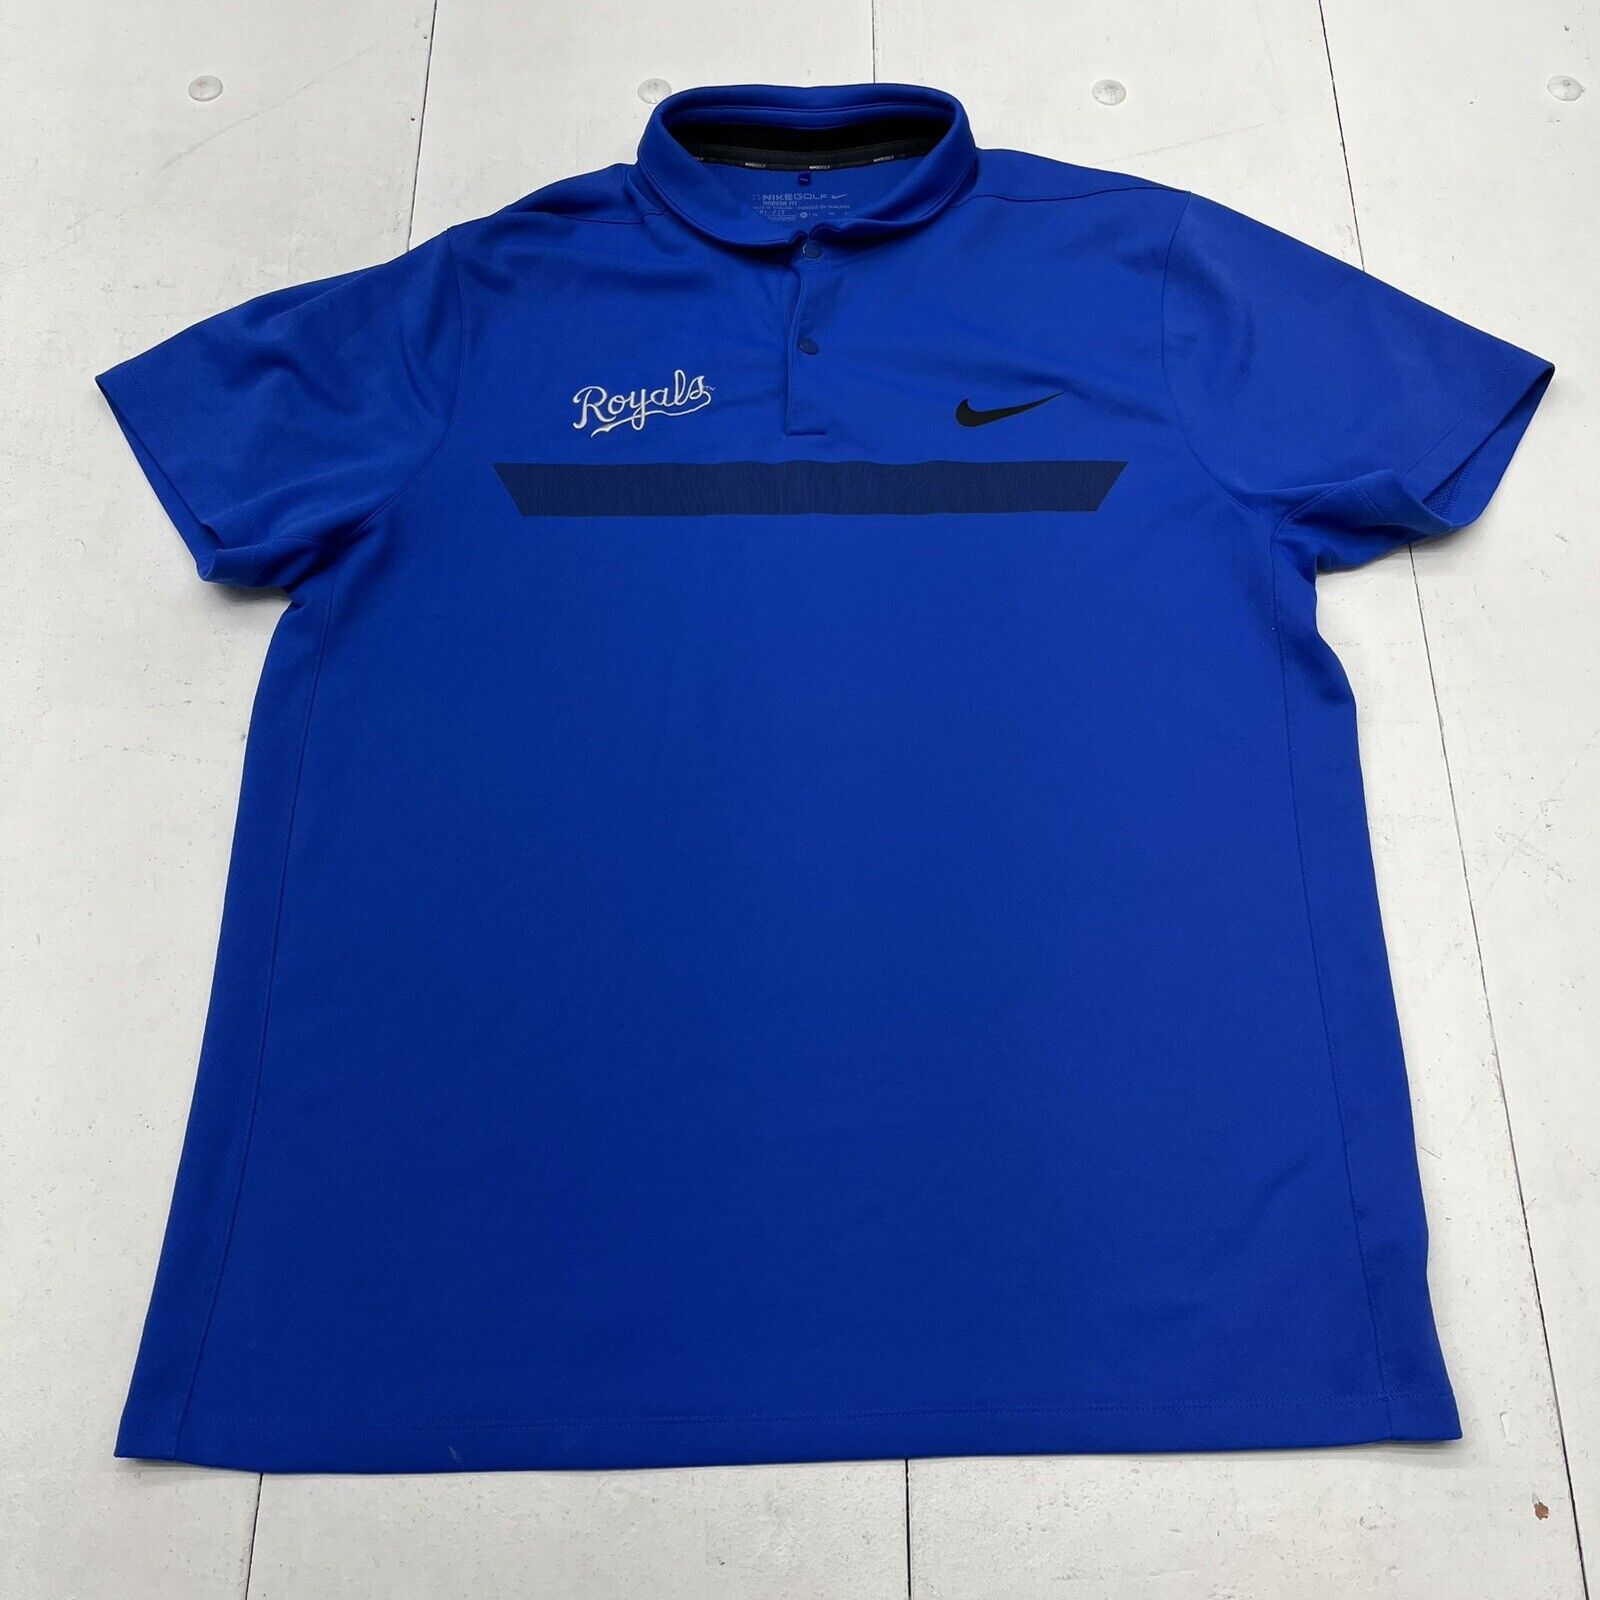 Nike Golf Blue Royals Polo Women's Size XL - beyond exchange